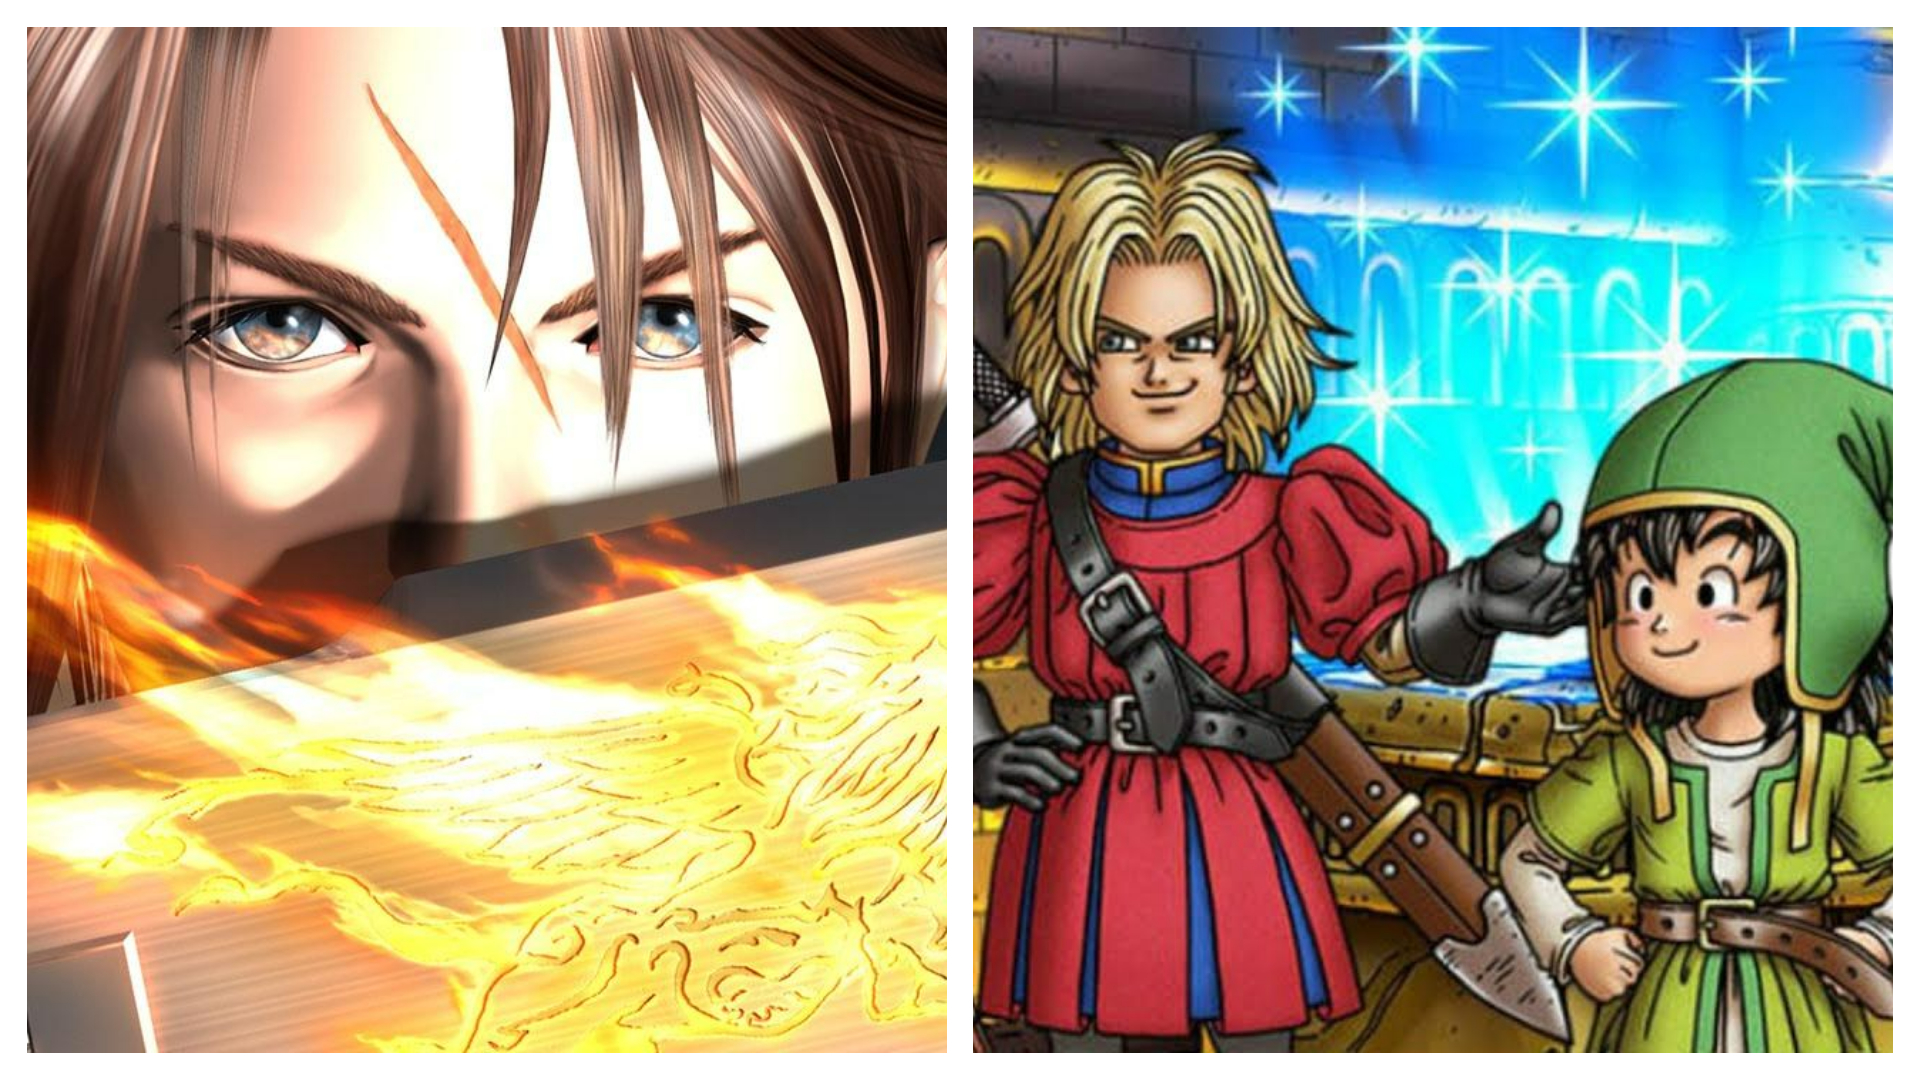 Montagem coloca Final Fantasy 8 e Dragon Quest 7 lado a lado - hoje, ambos são produtos da Square Enix